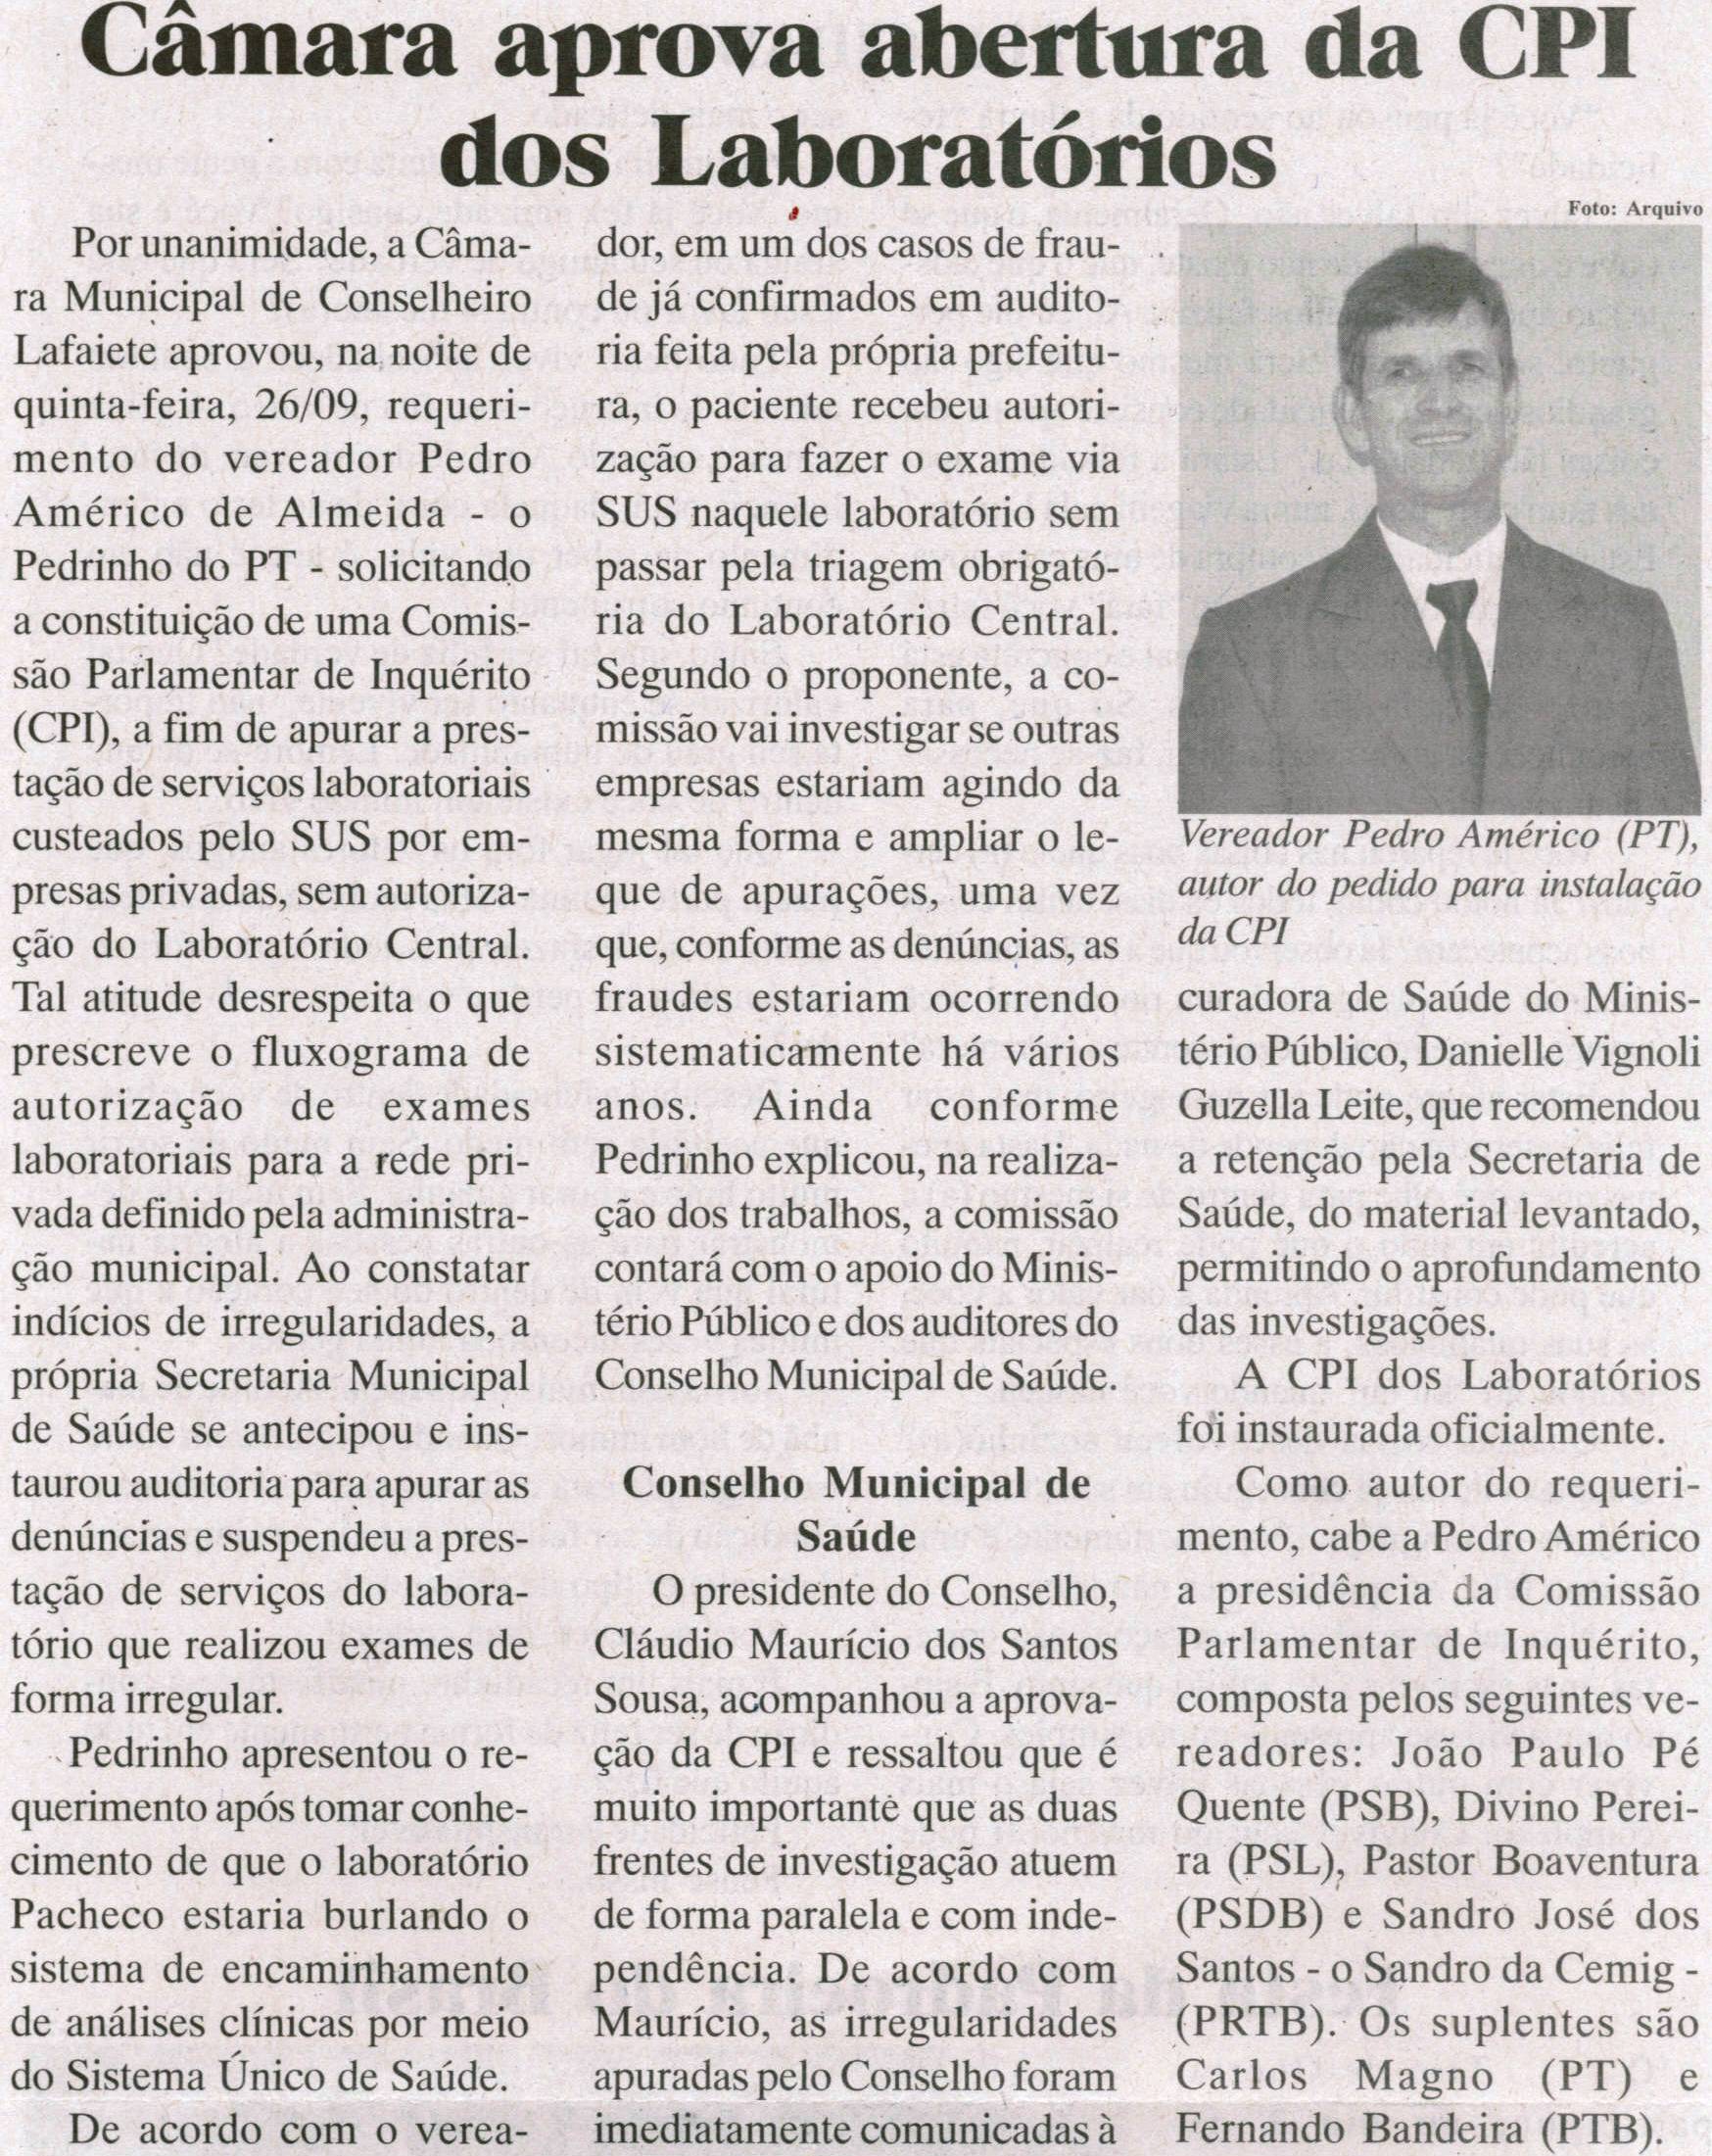 Câmara aprova abertura da CPI dos Laboratórios. Jornal Baruc, Congonhas, 1ª quinzena de out. 2013, p. 07.